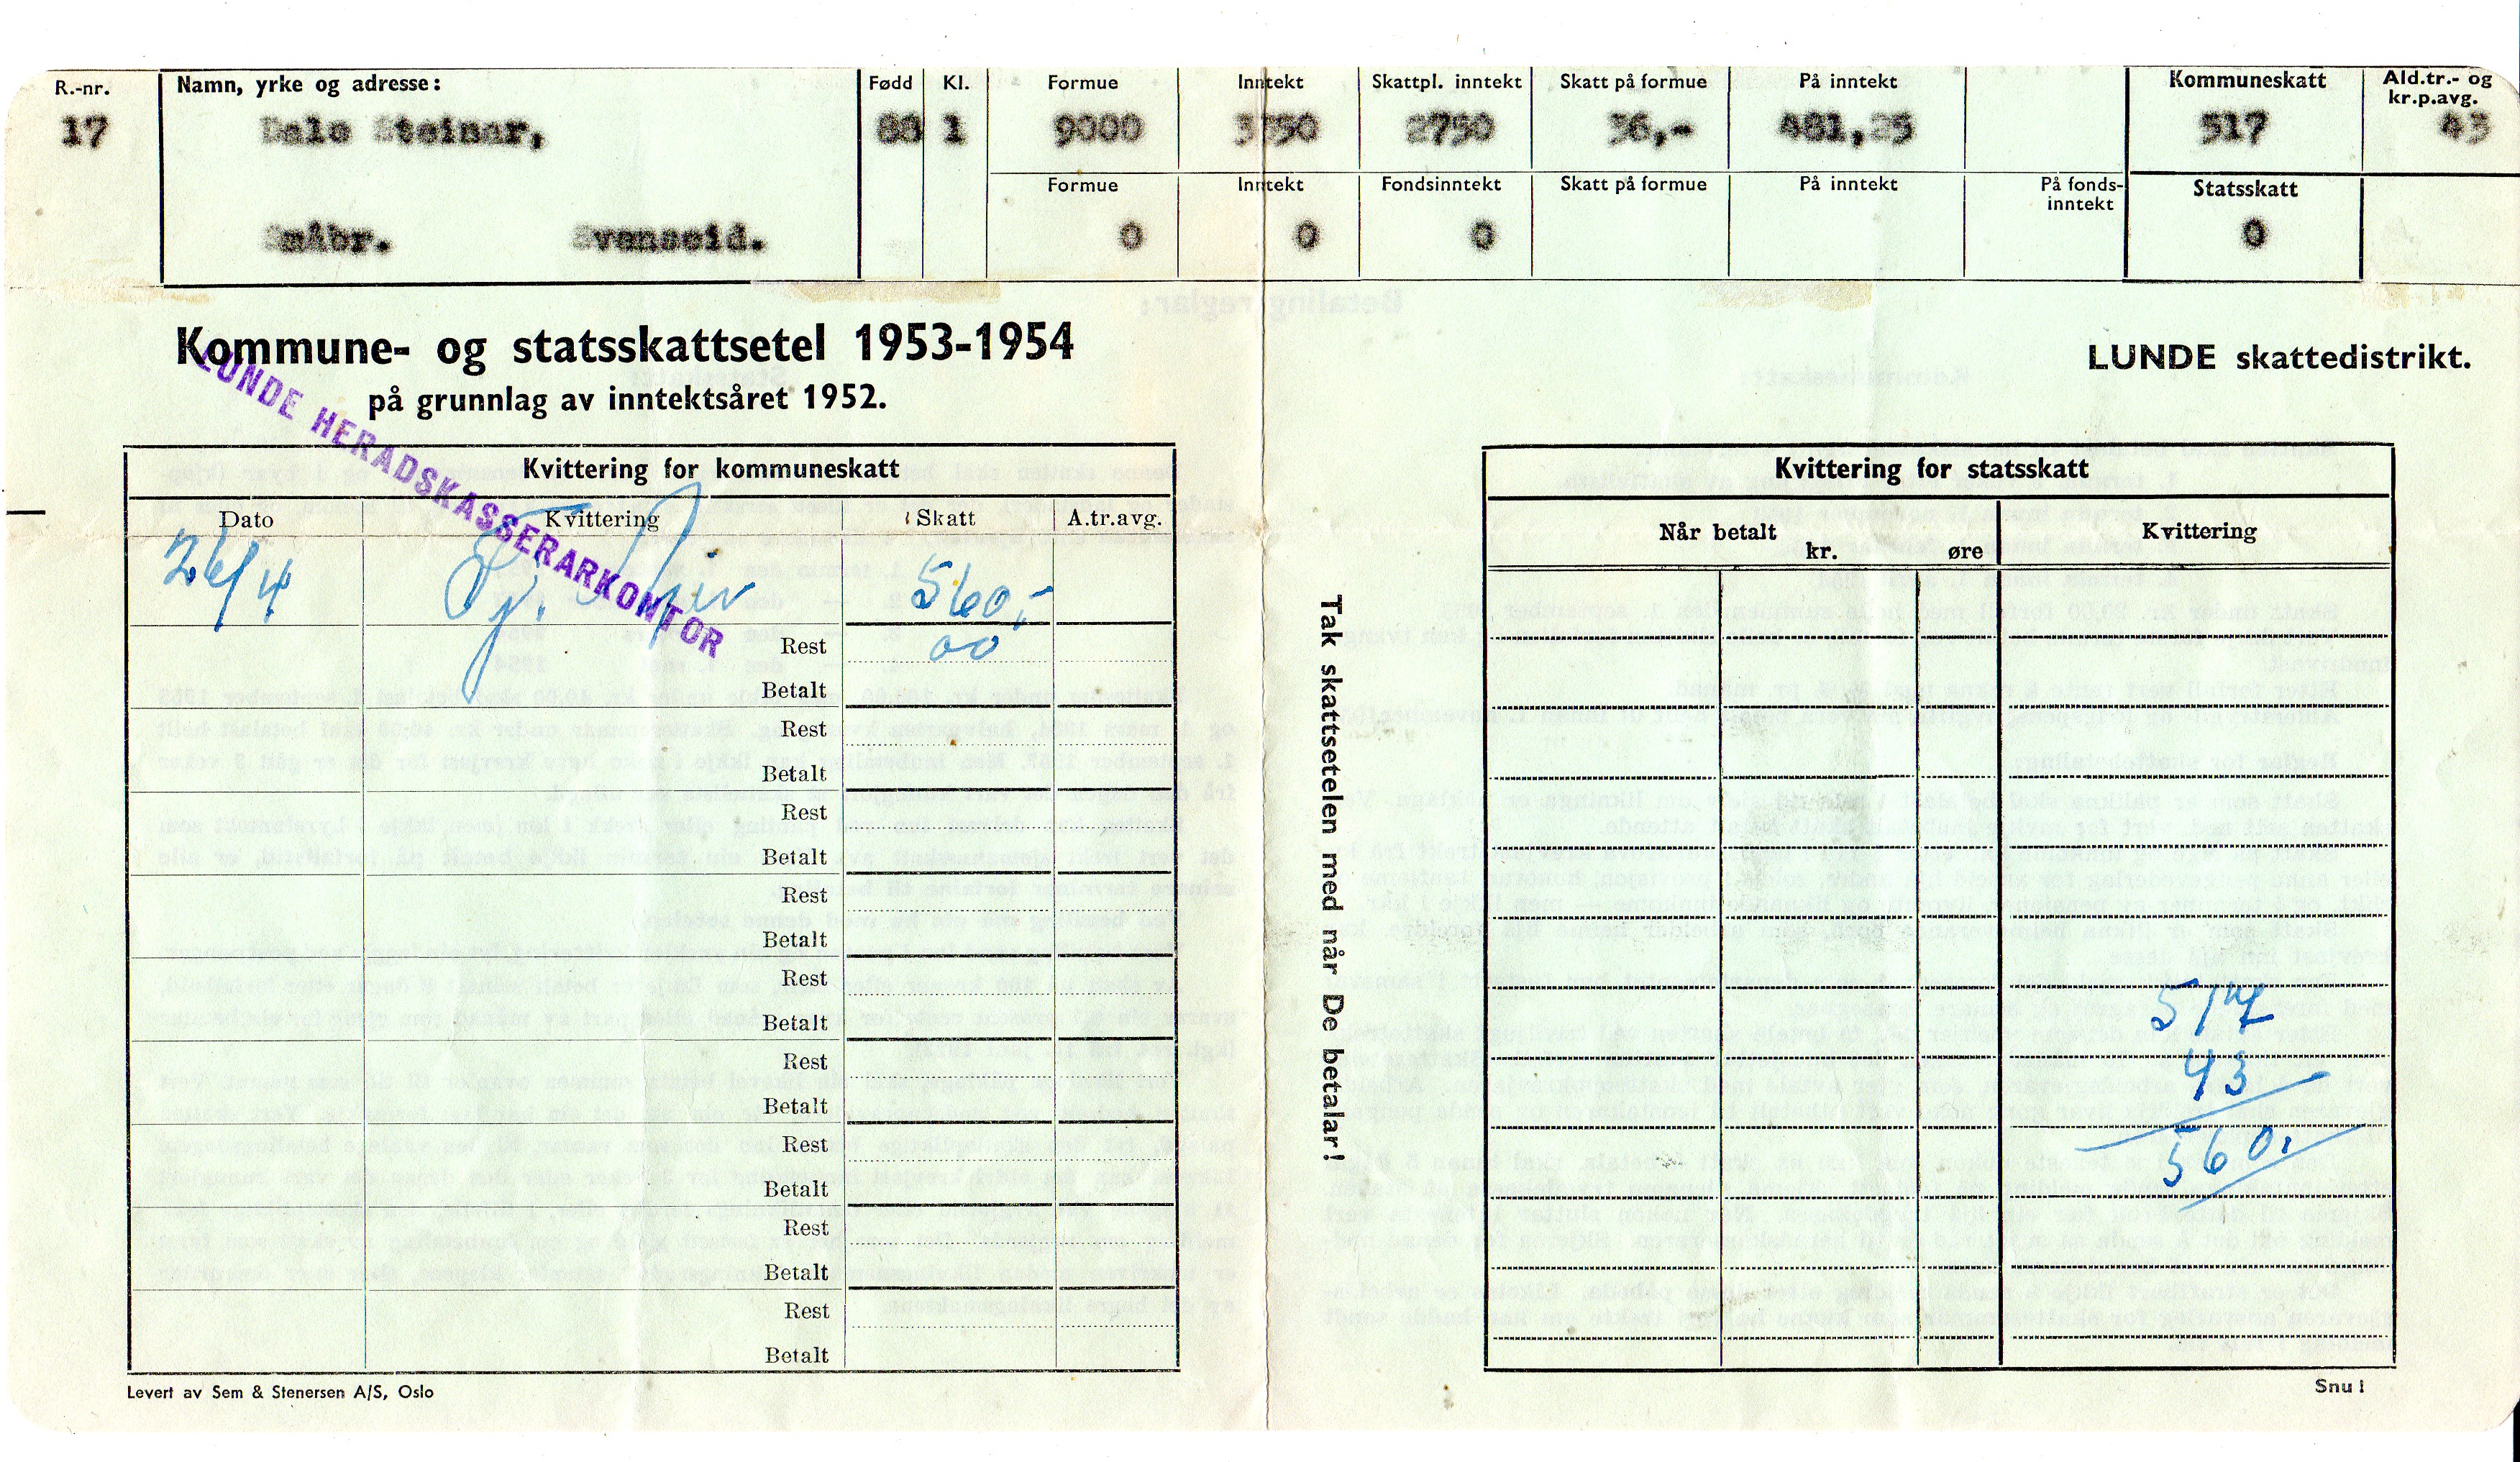 Kommune og skatteseddel 1953/54 Lunde